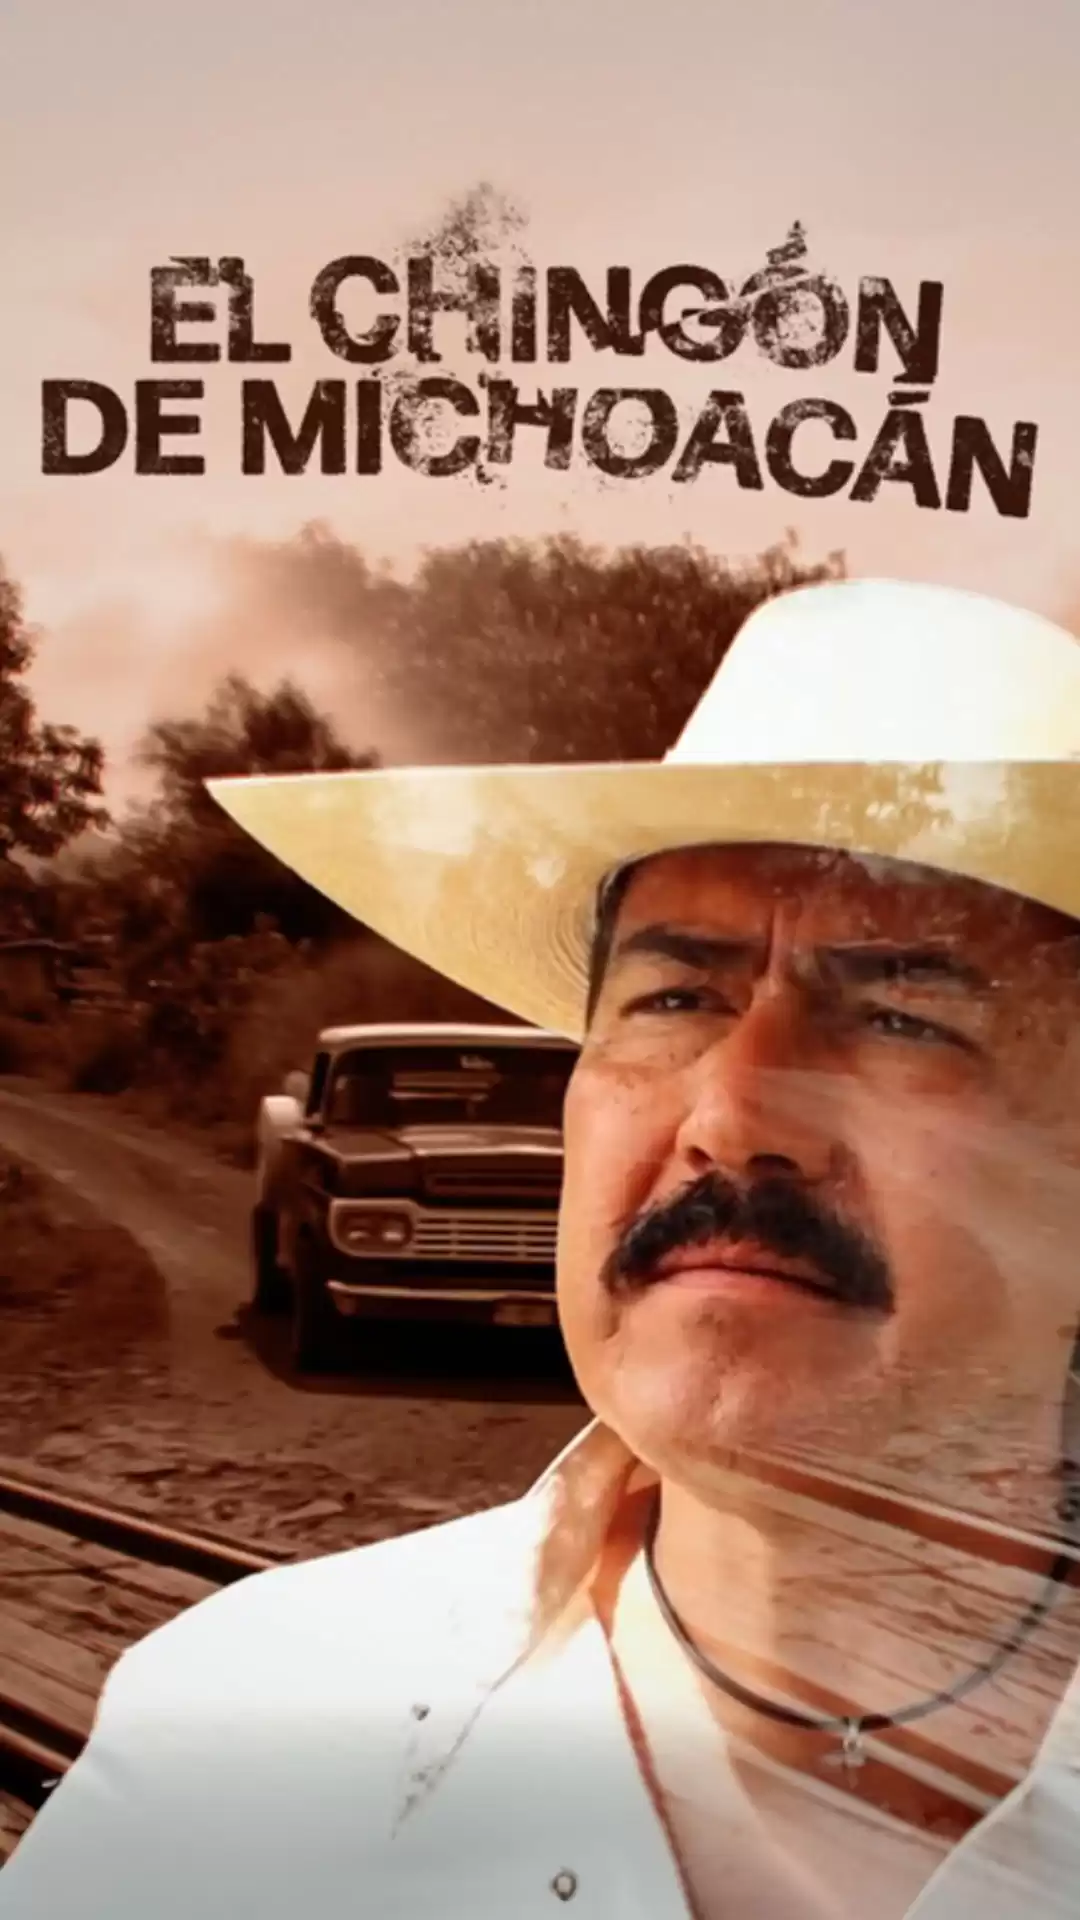 El Chingon De Michoacan